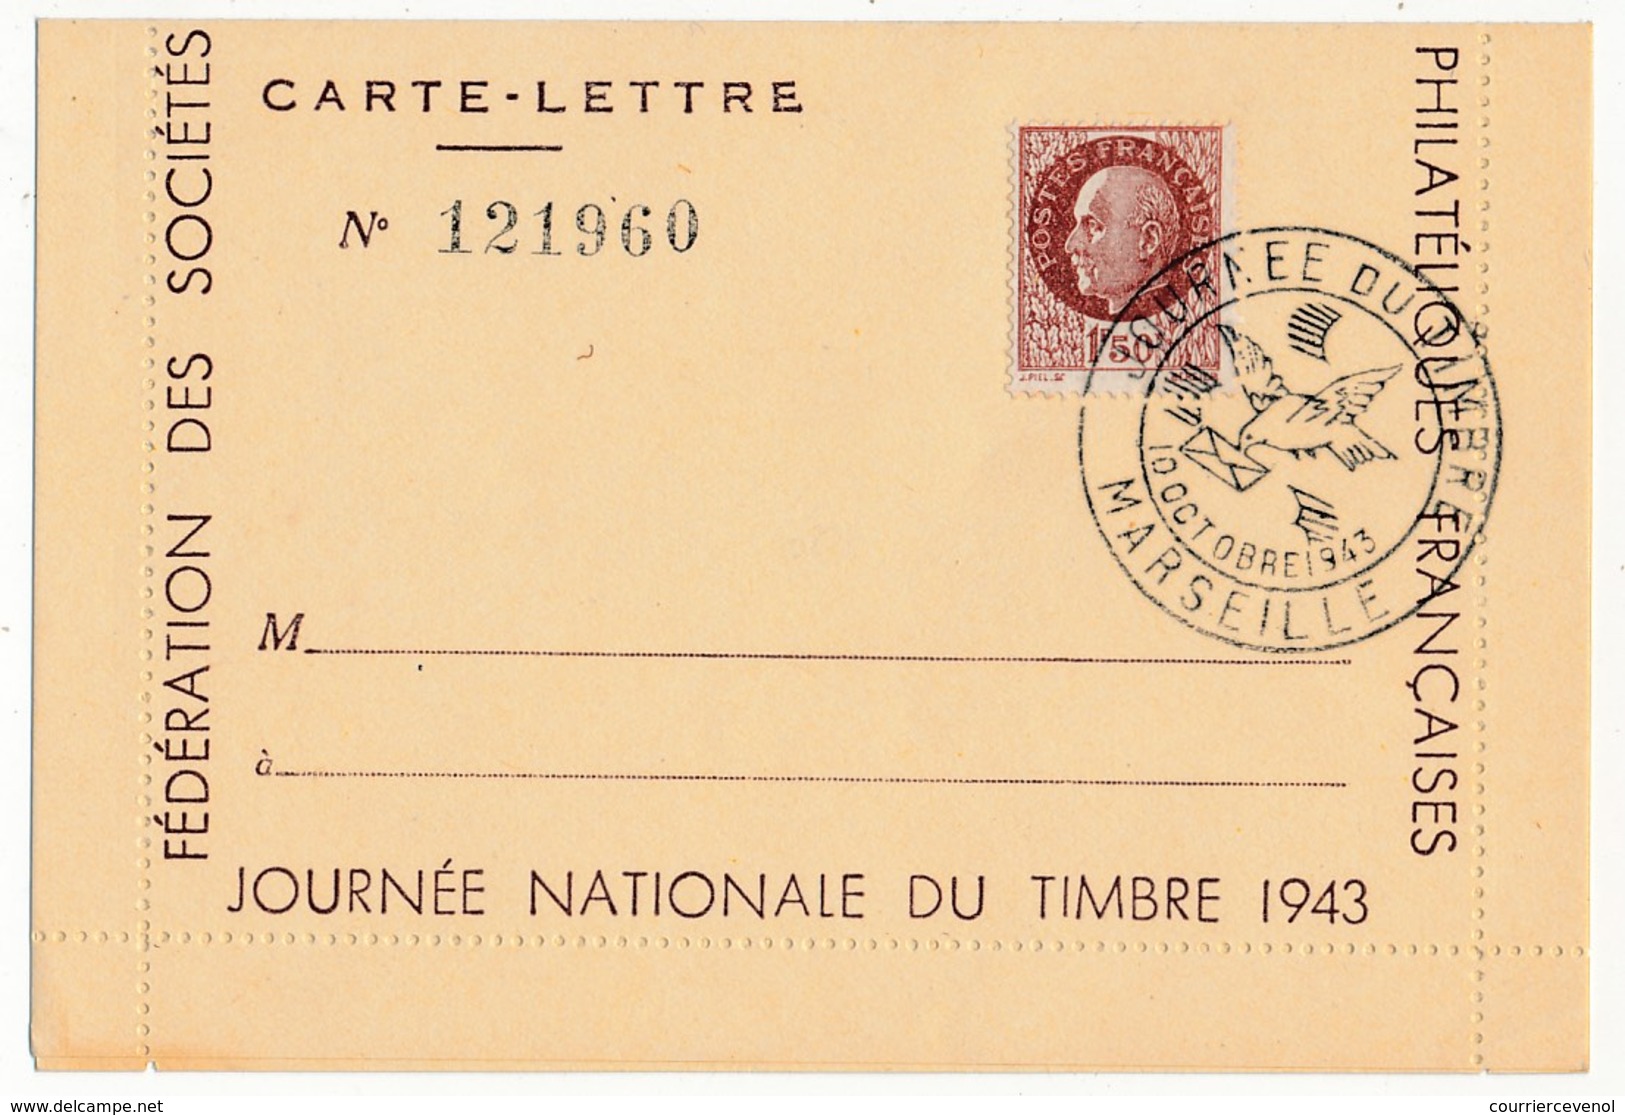 FRANCE - Carte-lettre Illustrée - Journée Du Timbre 1943 MARSEILLE - Dessin DRAIM - Affr 1,50 Bersier, Cachet Temporaire - Giornata Del Francobollo